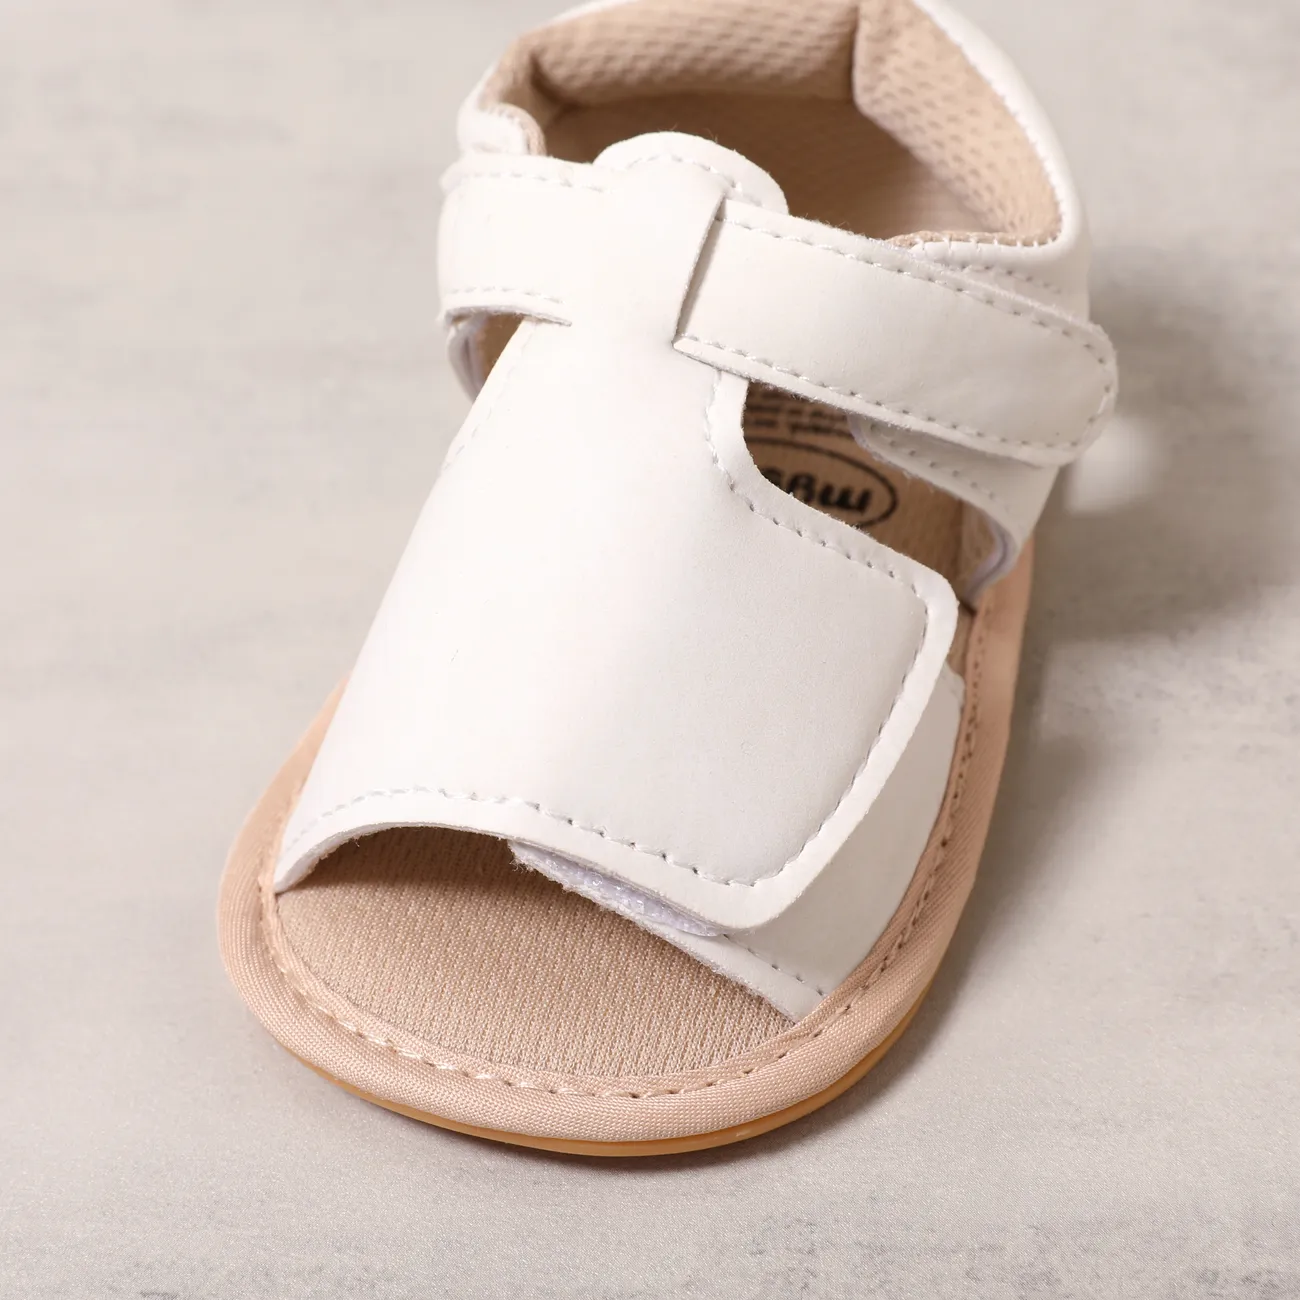 嬰兒 中性 休閒 純色 學步鞋 白色 big image 1